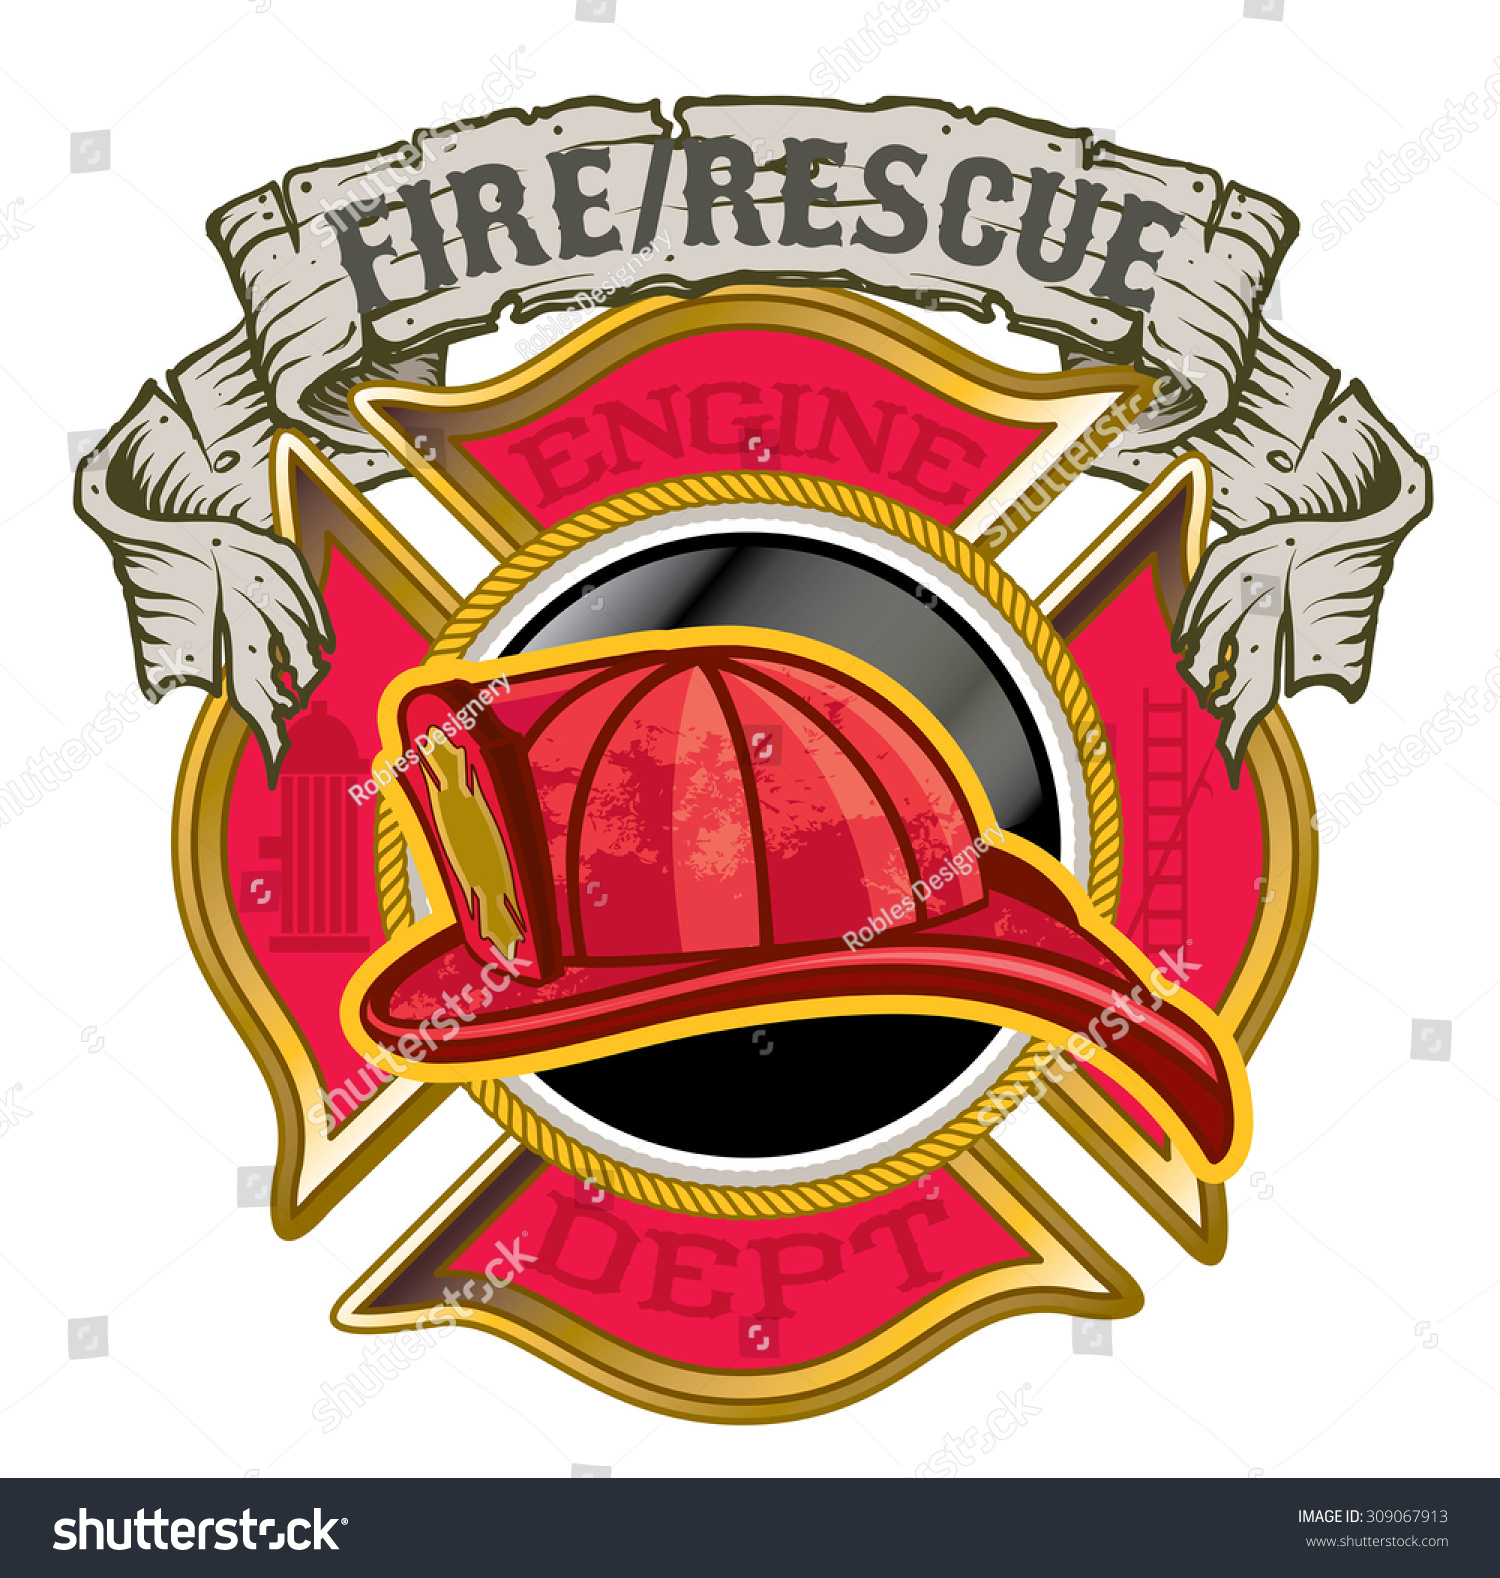 Fire Department Maltese Cross Helmet Banner Stock Vector (Royalty Free ...